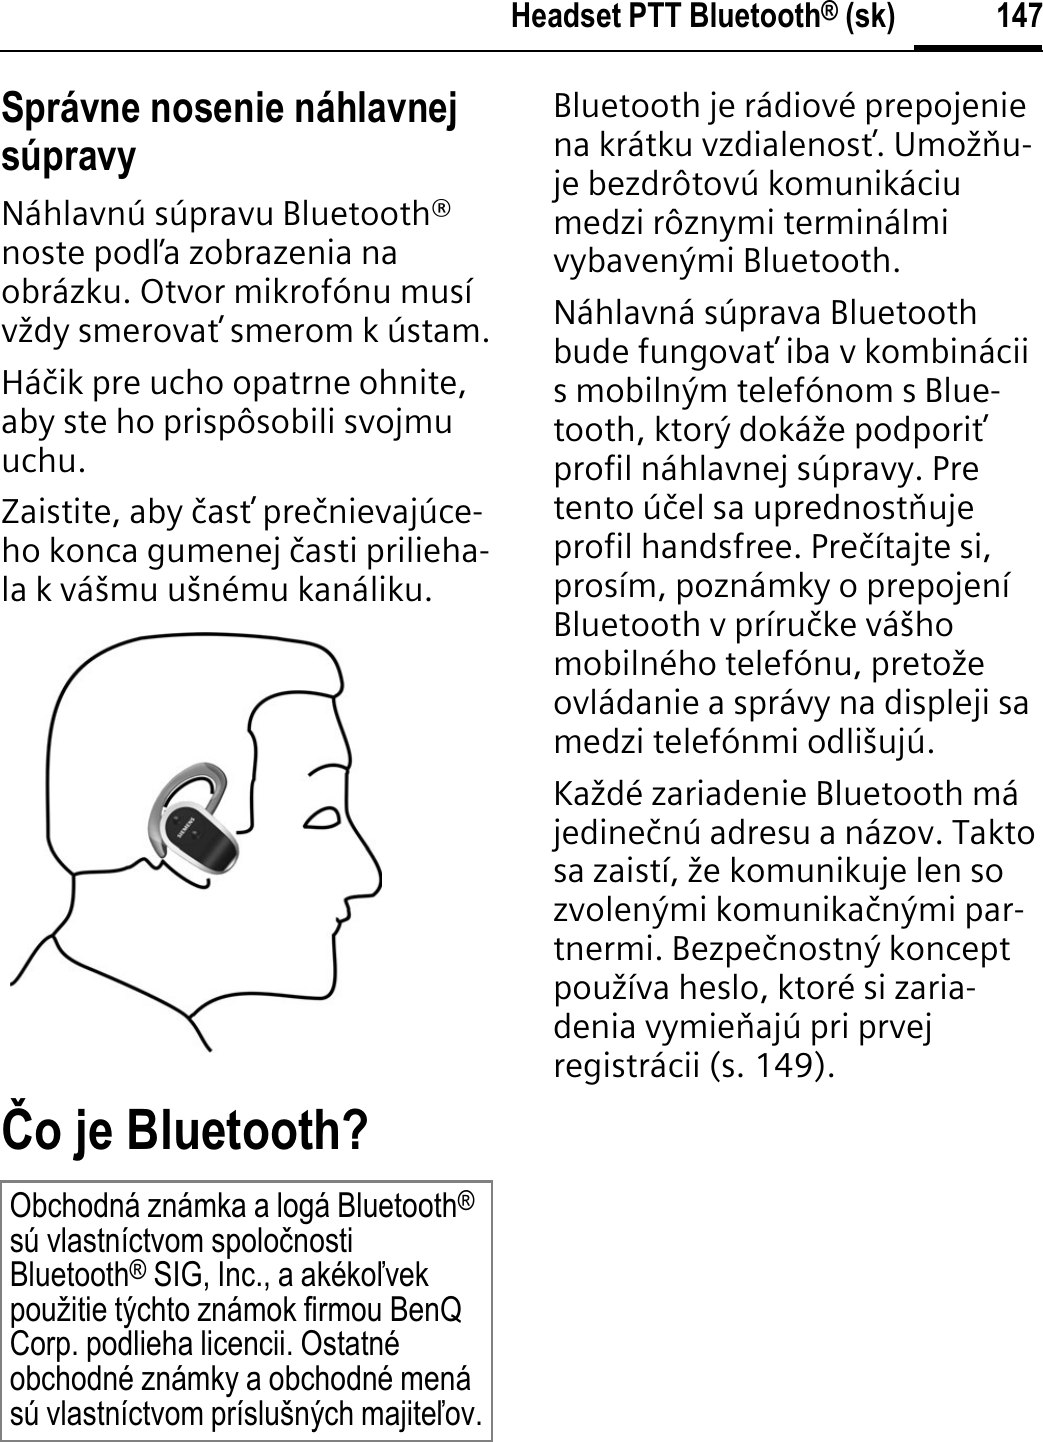 147Headset PTT Bluetooth® (sk)Správne nosenie náhlavnej súpravyNáhlavnú súpravu Bluetooth® noste podĥa zobrazenia na obrázku. Otvor mikrofónu musí vždy smerovaŃ smerom k ústam.Háþik pre ucho opatrne ohnite, aby ste ho prispôsobili svojmu uchu.Zaistite, aby þasŃ preþnievajúce-ho konca gumenej þasti prilieha-la k vášmu ušnému kanáliku.þo je Bluetooth?Bluetooth je rádiové prepojenie na krátku vzdialenosŃ. Umožĭu-je bezdrôtovú komunikáciu medzi rôznymi terminálmi vybavenými Bluetooth.Náhlavná súprava Bluetooth bude fungovaŃ iba v kombinácii s mobilným telefónom s Blue-tooth, ktorý dokáže podporiŃprofil náhlavnej súpravy. Pre tento úþel sa uprednostĭuje profil handsfree. Preþítajte si, prosím, poznámky o prepojení Bluetooth v príruþke vášho mobilného telefónu, pretože ovládanie a správy na displeji sa medzi telefónmi odlišujú.Každé zariadenie Bluetooth má jedineþnú adresu a názov. Takto sa zaistí, že komunikuje len so zvolenými komunikaþnými par-tnermi. Bezpeþnostný koncept používa heslo, ktoré si zaria-denia vymieĭajú pri prvej registrácii (s. 149).Obchodná známka a logá Bluetooth®sú vlastníctvom spoloþnosti Bluetooth® SIG, Inc., a akékoĐvek použitie týchto známok firmou BenQ Corp. podlieha licencii. Ostatné obchodné známky a obchodné mená sú vlastníctvom príslušných majiteĐov.